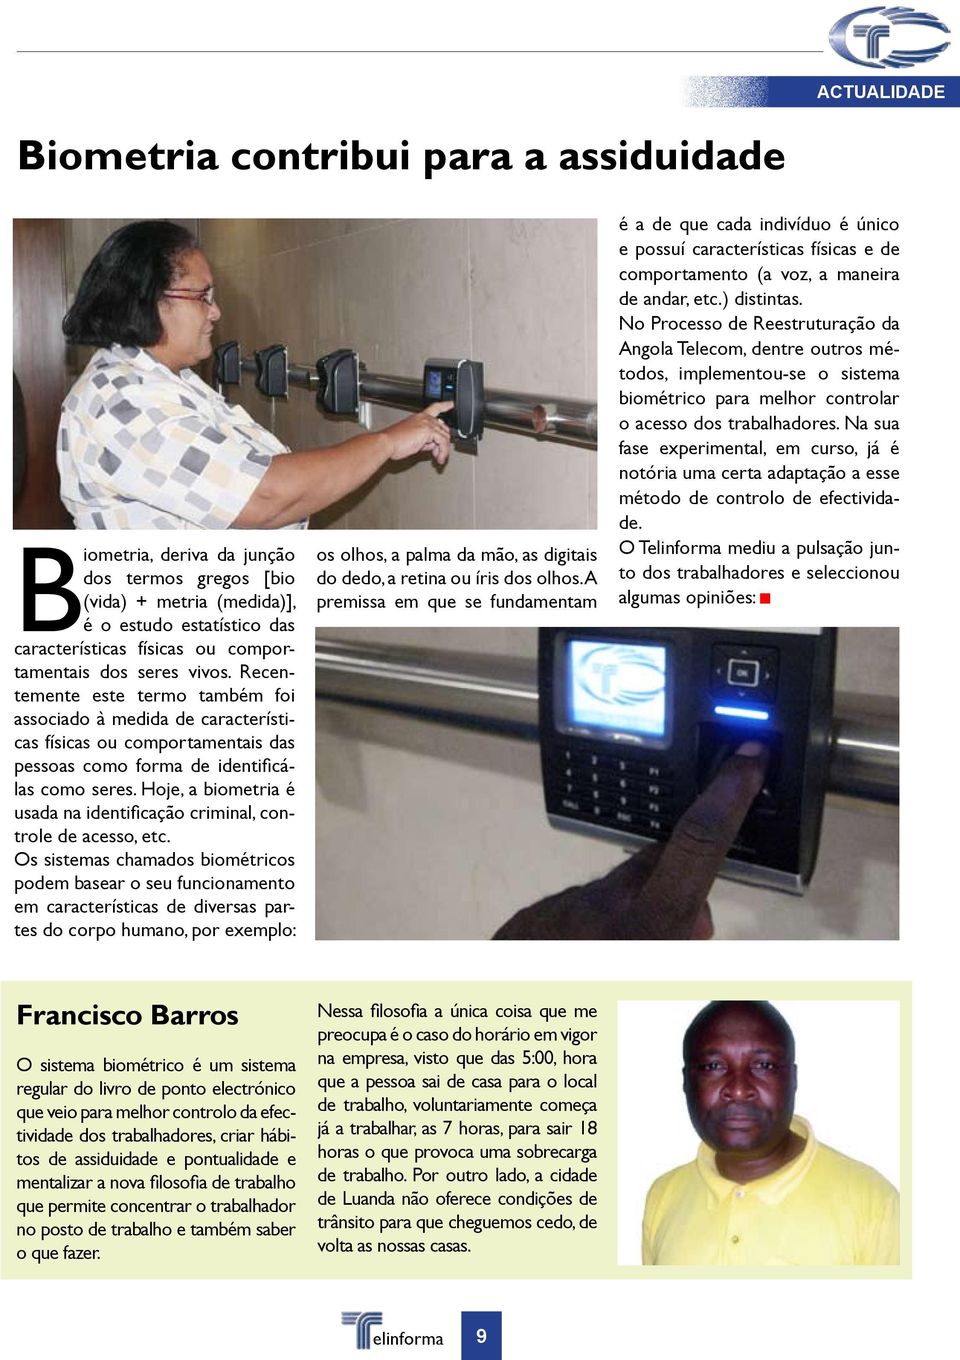 Hoje, a biometria é usada na identificação criminal, controle de acesso, etc.